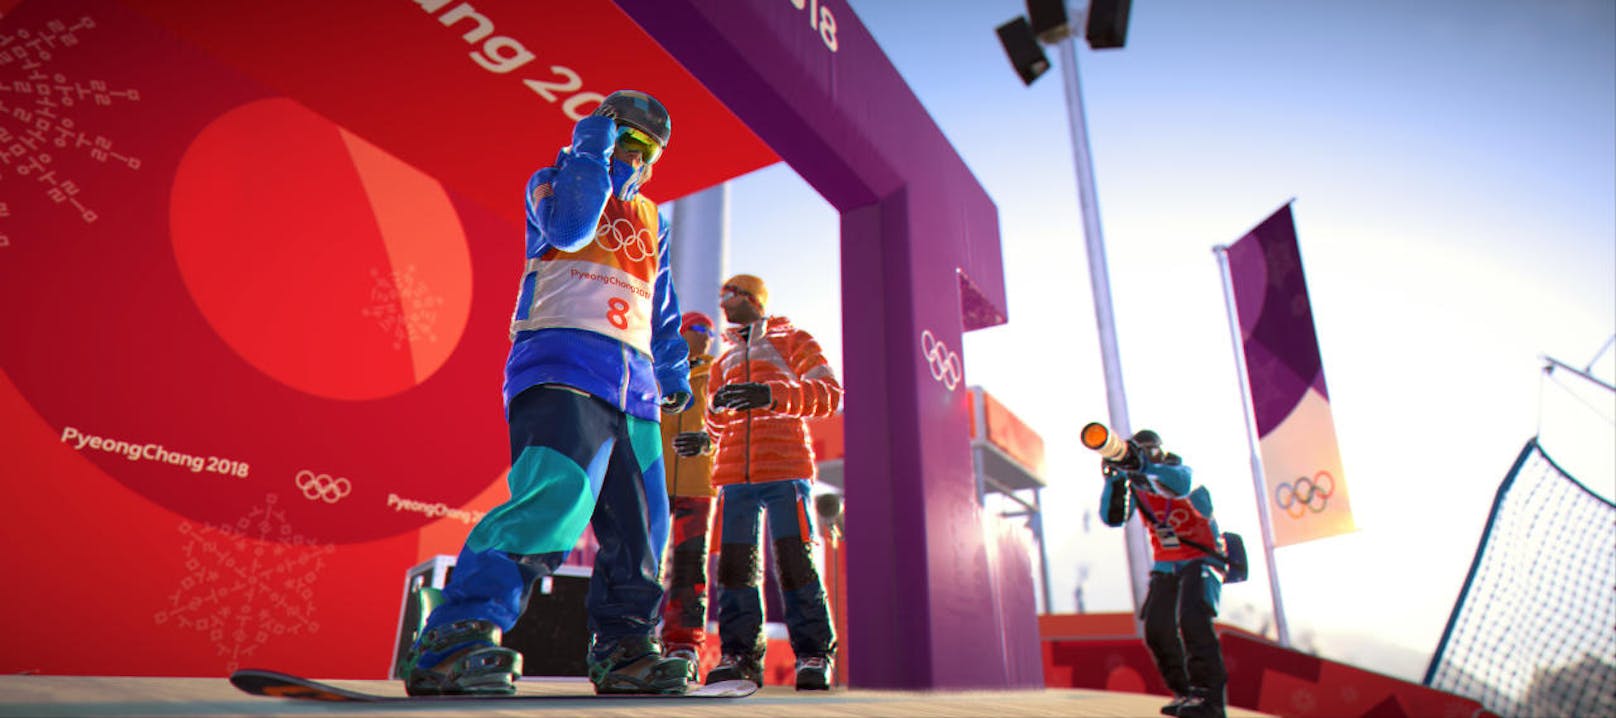 Das Add-On, das es als Paket mit dem Hauptspiel oder als eigenen Download gibt, entführt in die Berge Japans und Koreas und führt die Sportarten der Olympischen Winterspiele 2018 ein.